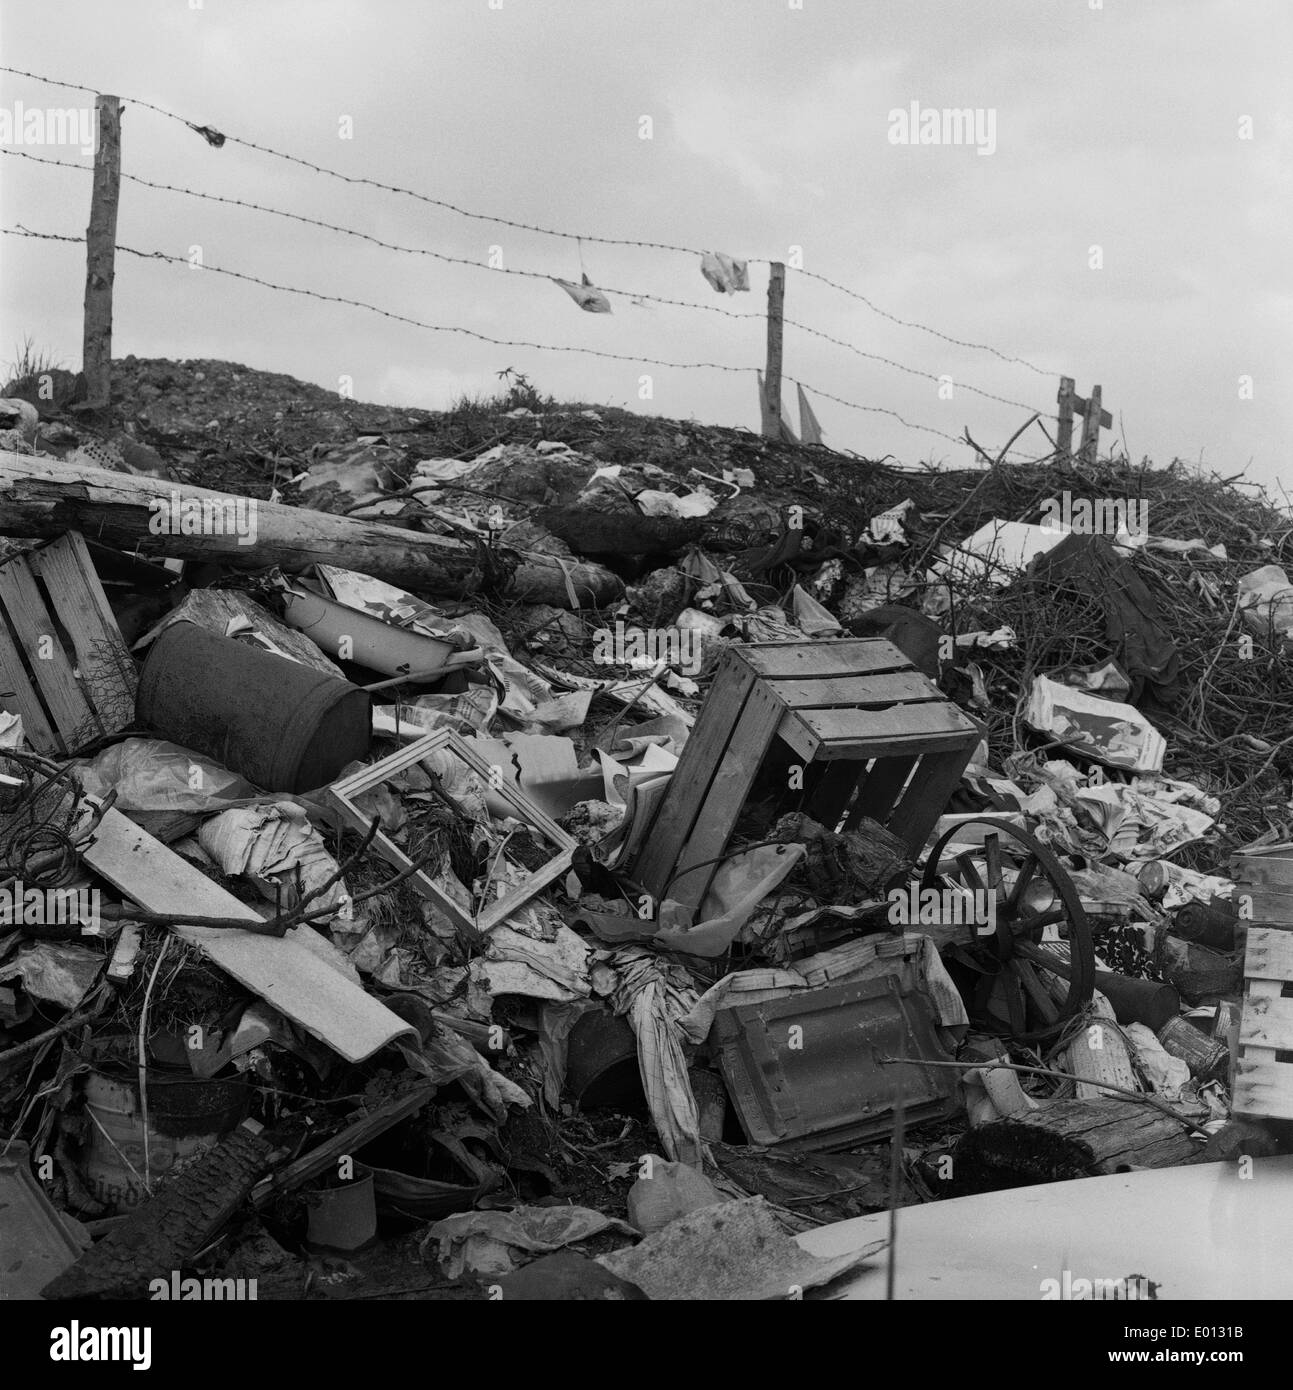 A rubbish dump, 1970 Stock Photo